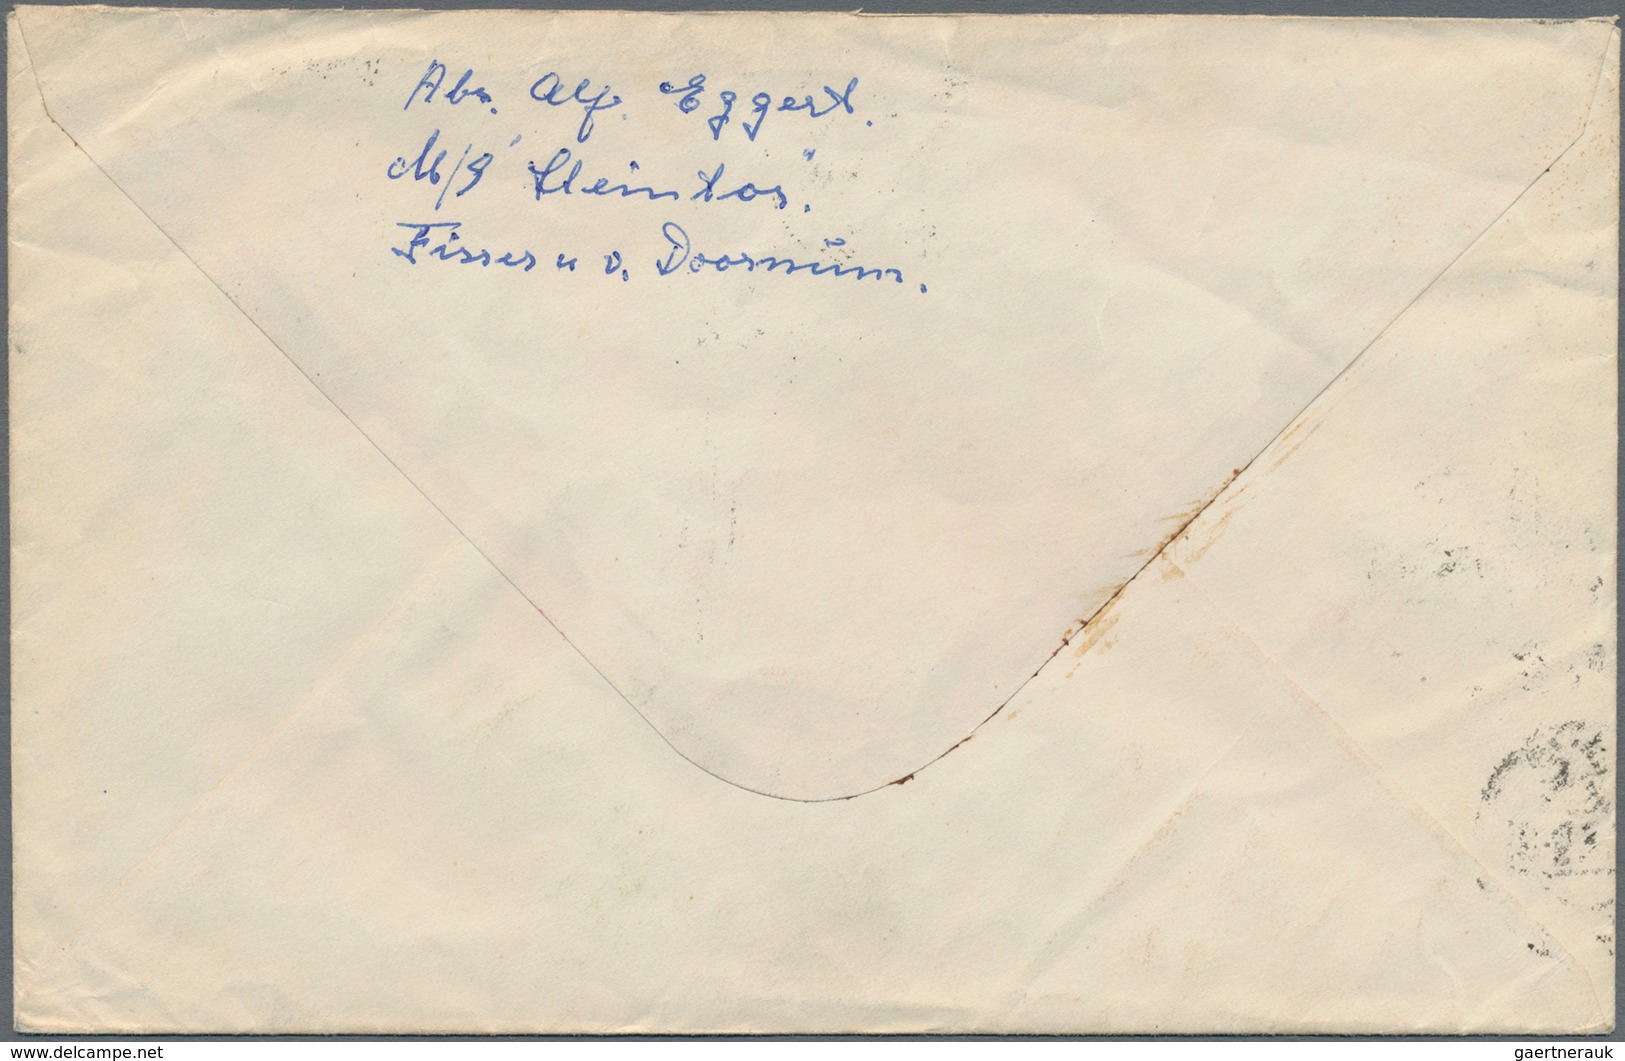 China - Volksrepublik: 1958/65, card addressed to Hamburg, bearing Stage Art of Mei Lan-fang (C94) 1